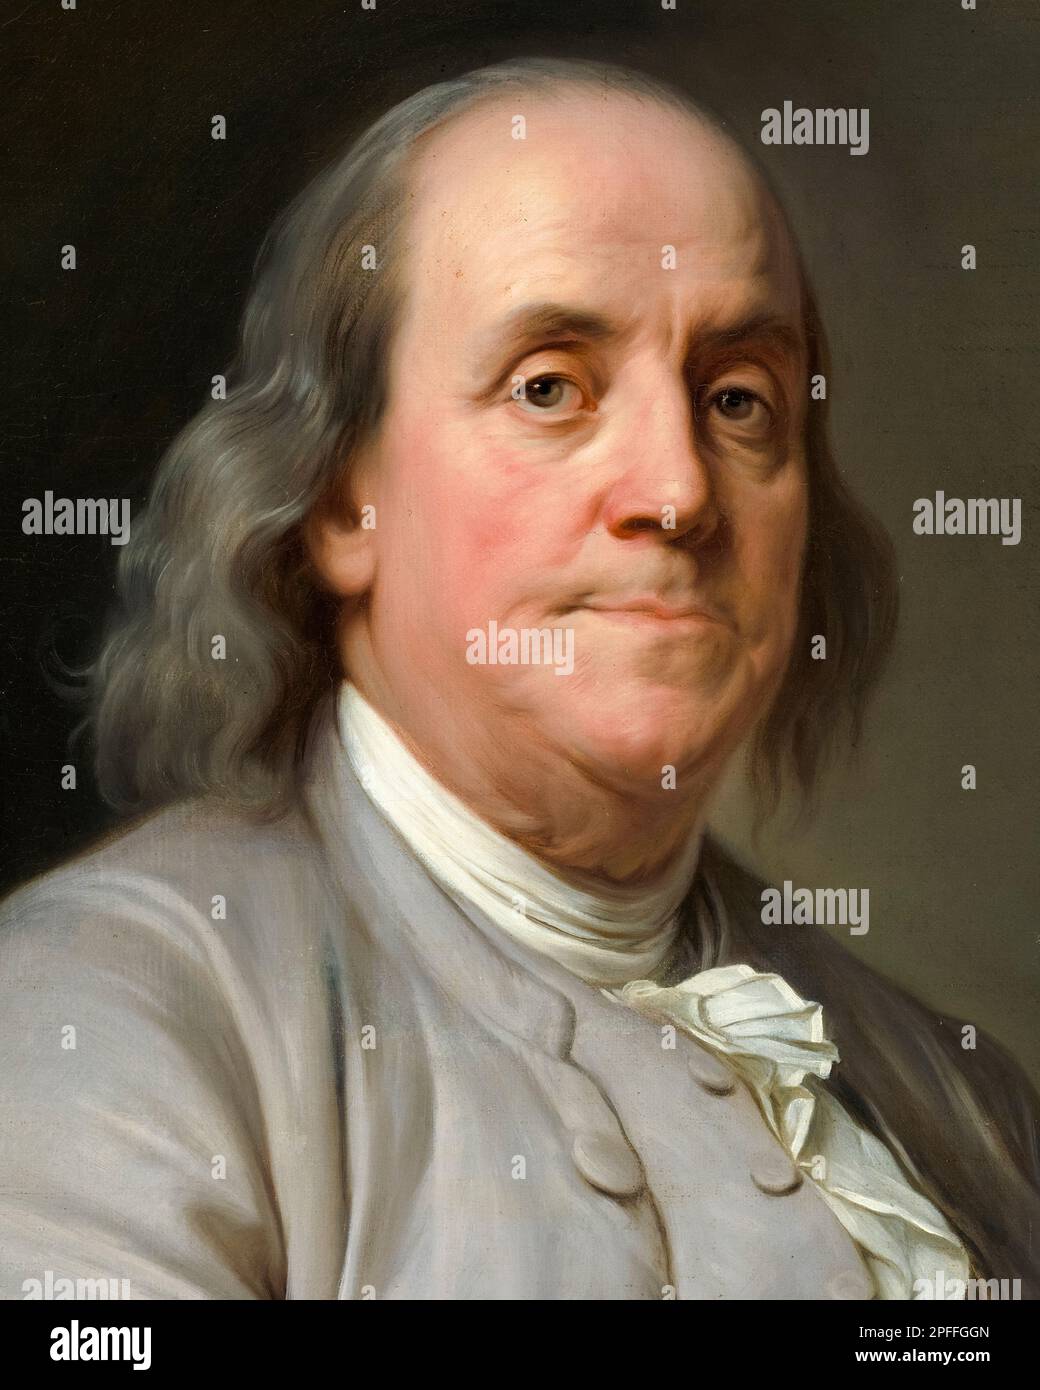 Benjamin Franklin (1706-1790), écrivain, scientifique, inventeur, et homme d'état. L'un des Pères fondateurs des États-Unis, portrait peint à l'huile sur toile par Joseph Siffred Duplessis, vers 1785 Banque D'Images